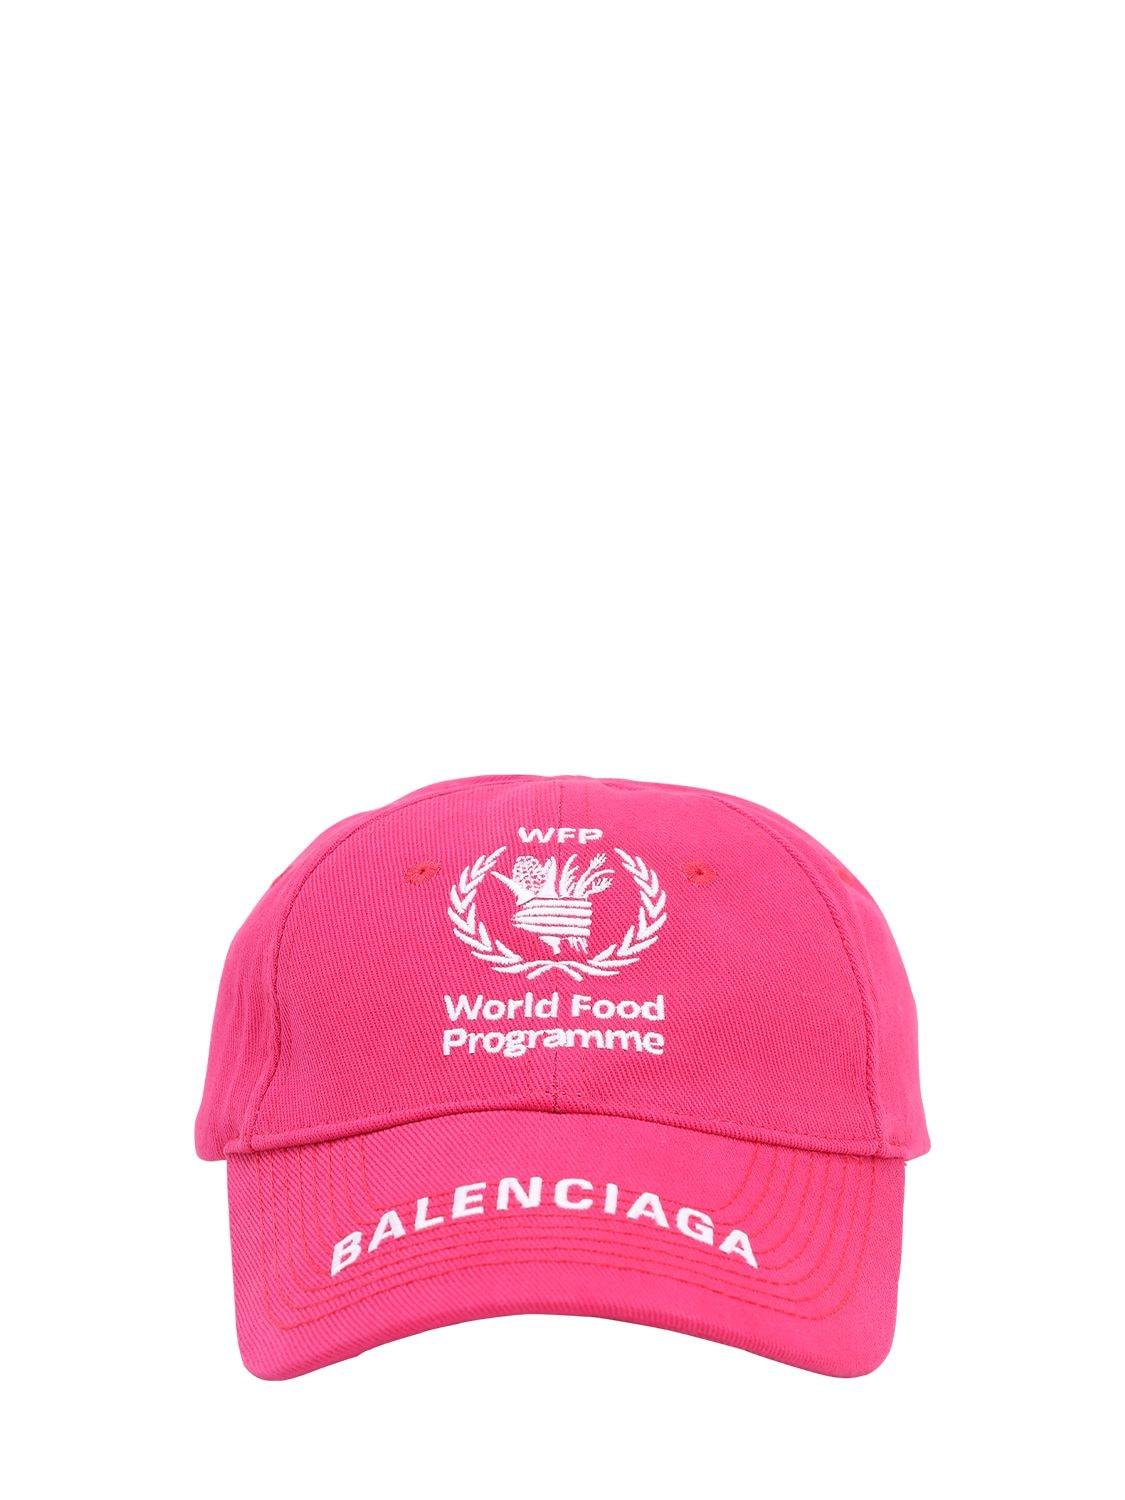 balenciaga pink hat